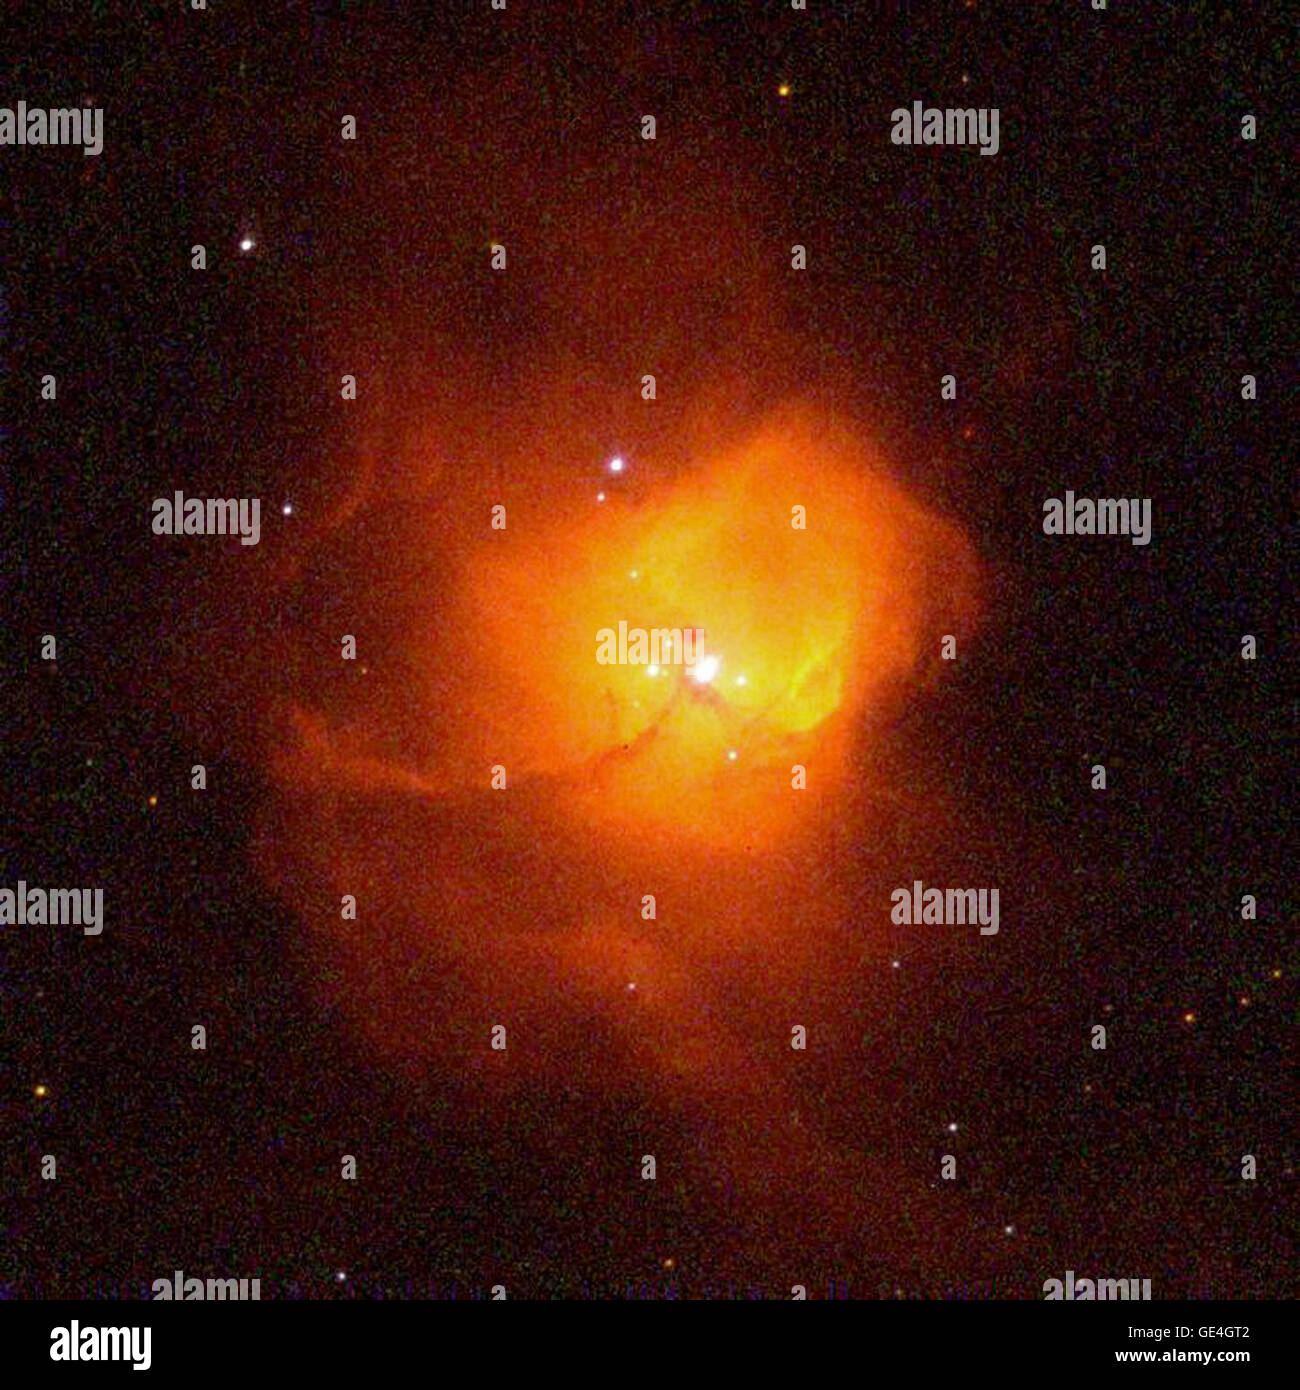 (24 September 1997) Eine Hubble Space Telescope der NASA "Family Portrait" der jungen, verschachtelt ultra helle Sterne in ihrer embryonalen Wolke aus glühenden Gasen. Der himmlische Entbindungsstation, N81, genannt ist befindet sich 200.000 Lichtjahre entfernt in der kleinen Magellanschen Wolke (SMC), eine kleine unregelmäßige Satelliten-Galaxie der Milchstraße. Exquisite Hubbles Auflösung kann Astronomen zu 50 separaten Sterne dicht gepackt in den Nebel Kern innerhalb einer 10 Lichtjahr Durchmesser - etwas mehr als zweimal die Entfernung zwischen Erde und den nächsten Stern, unsere Sonne zu lokalisieren. Das nächste paar von Sternen ist nur 1/3 o Stockfoto